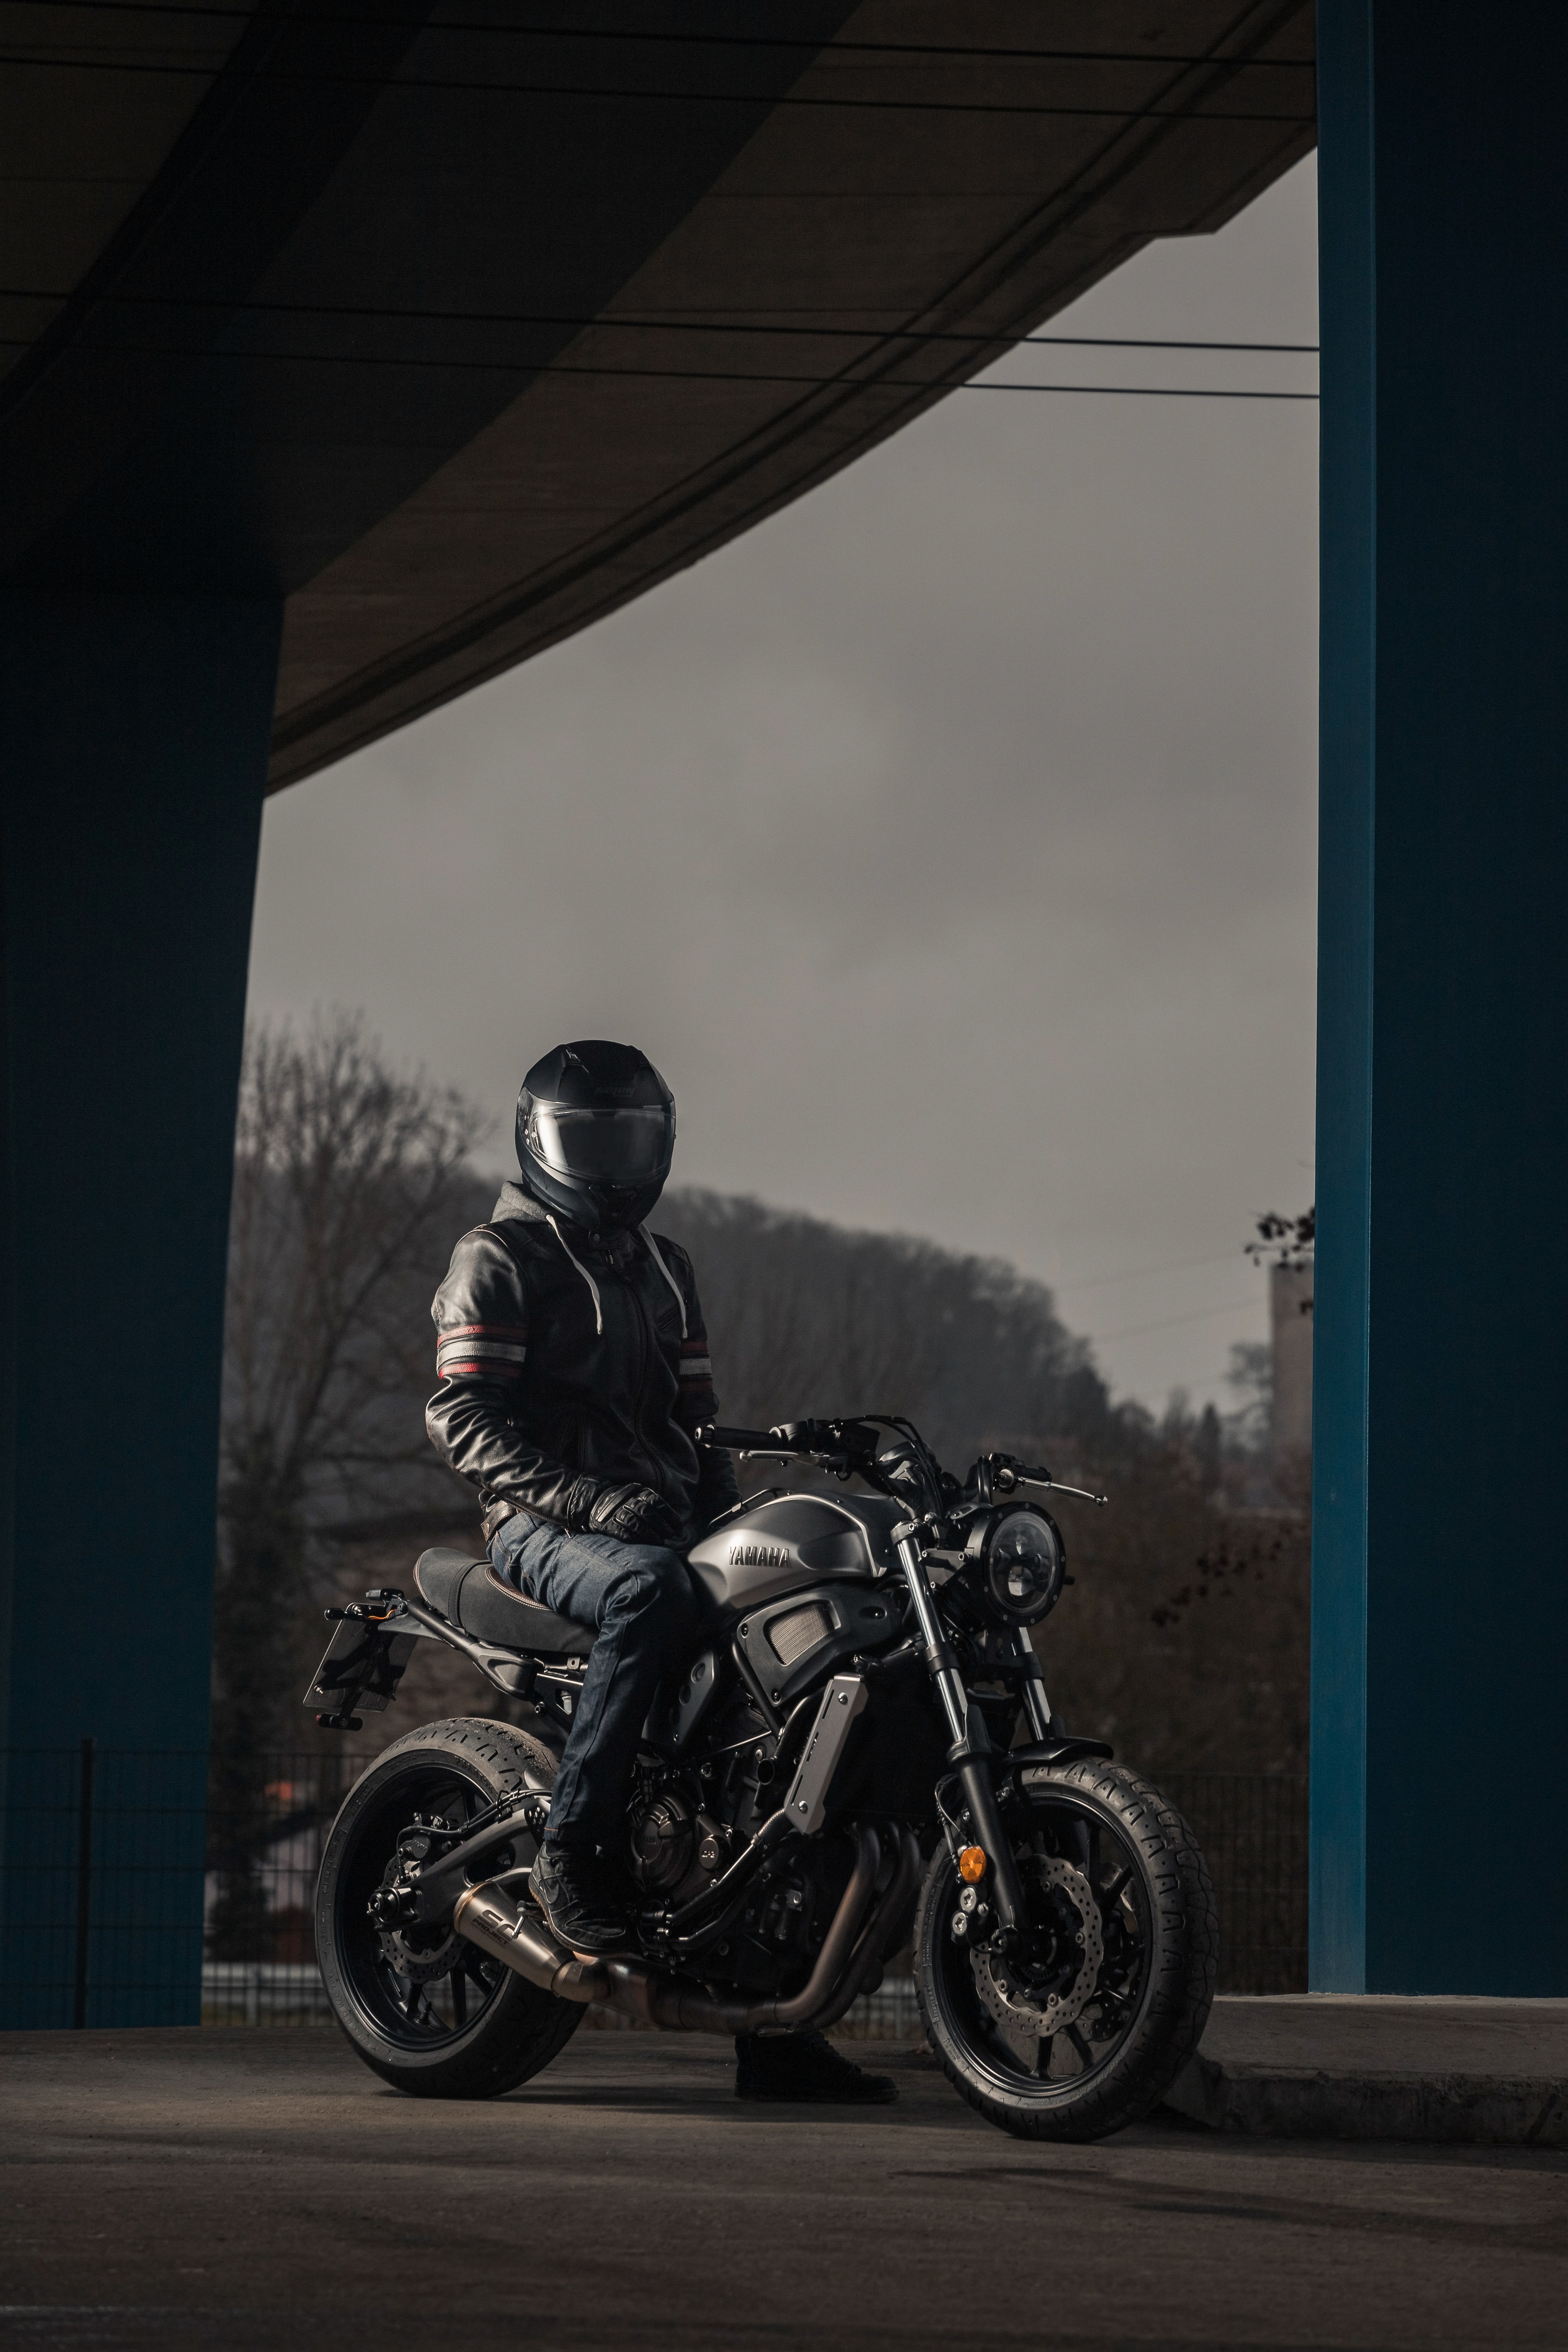 Desktop Backgrounds Motorcycles motorcyclist, helmet, wheels, motorcycle